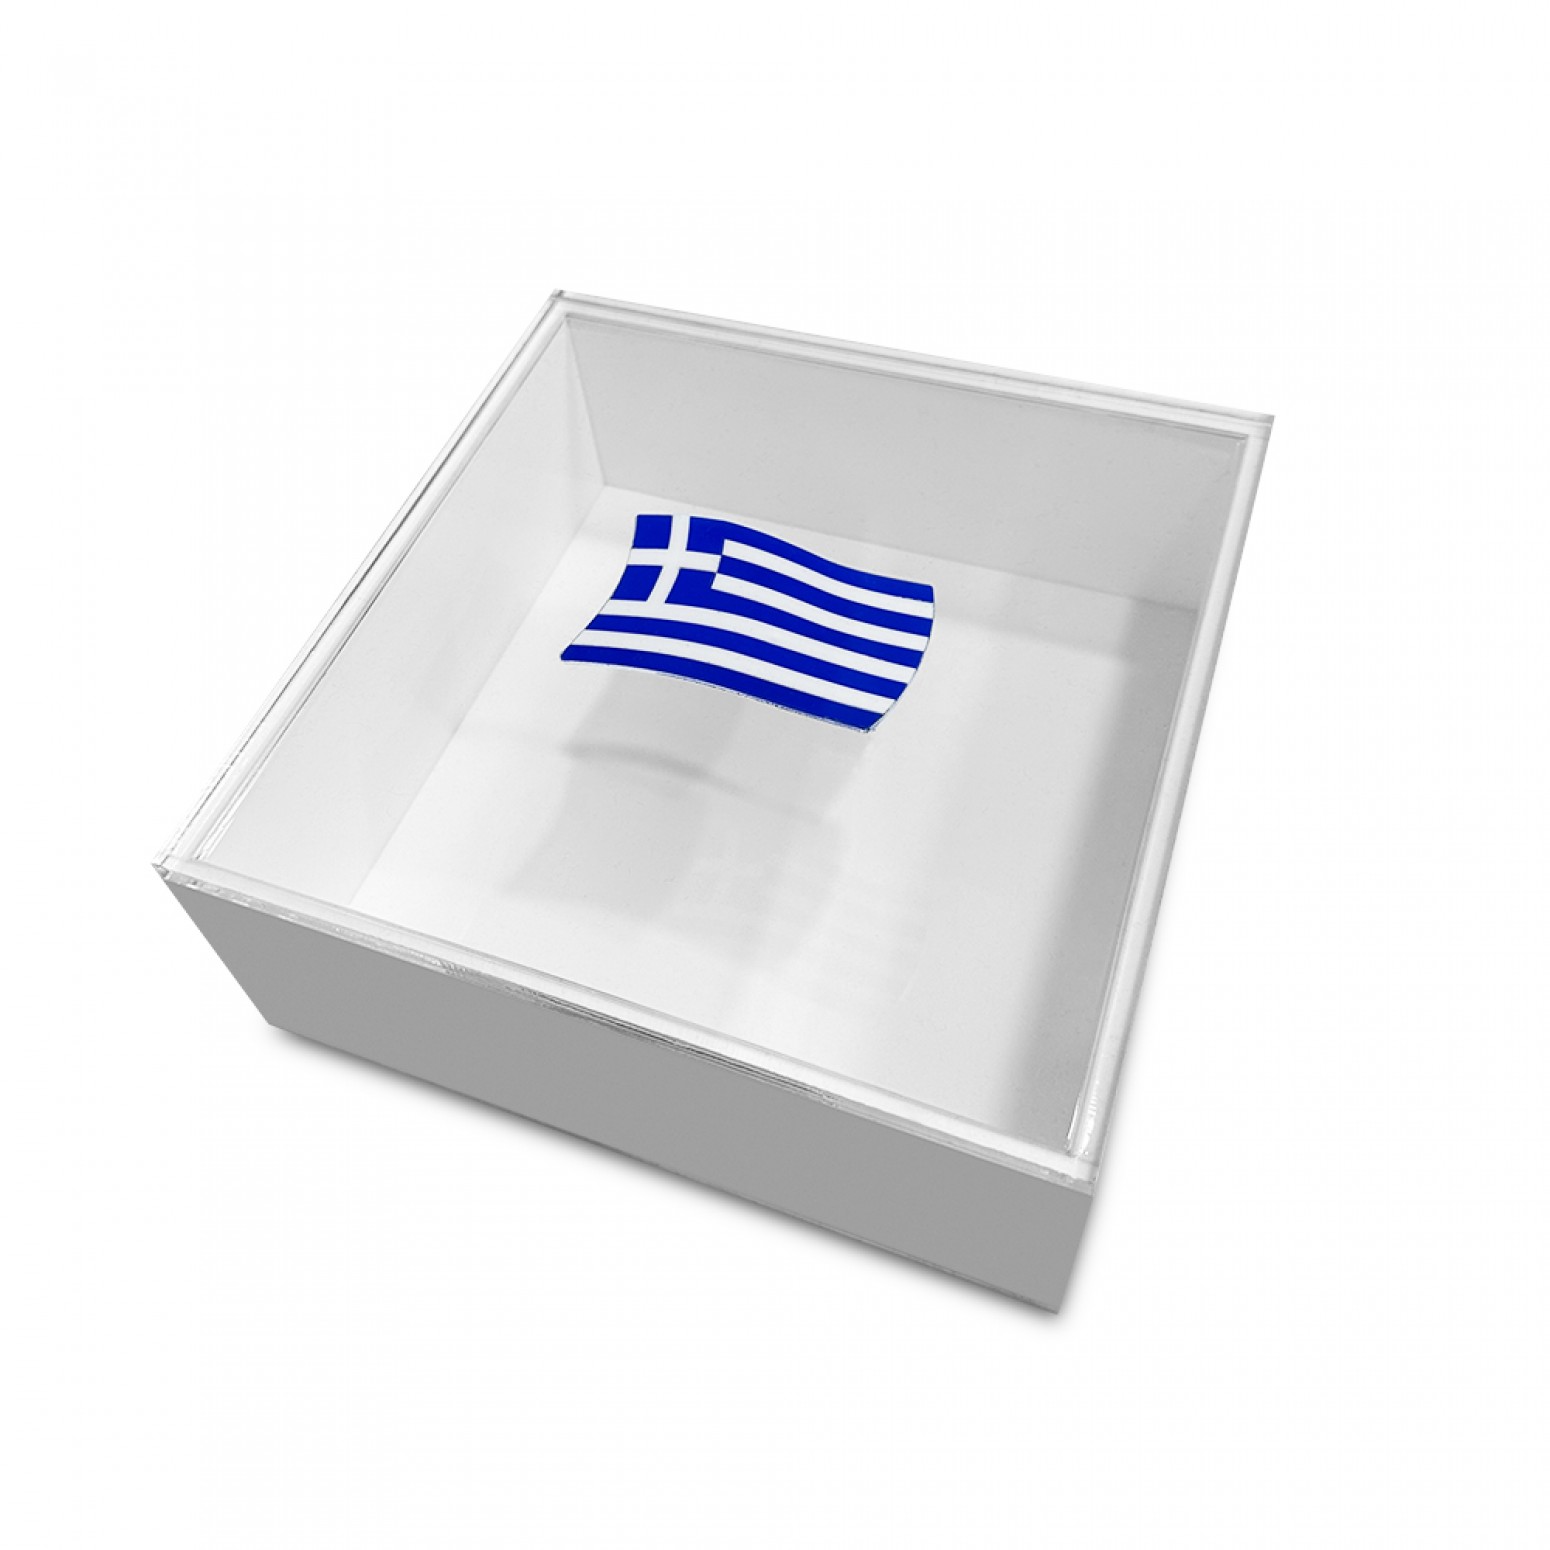 Κουτί πλεξιγκλάς λευκό με διάφανο καπάκι και την Ελληνική σημαία 20 x 20 x 8cm, ac1567 ΔΩΡΑ Κοσμηματα - chrilia.gr